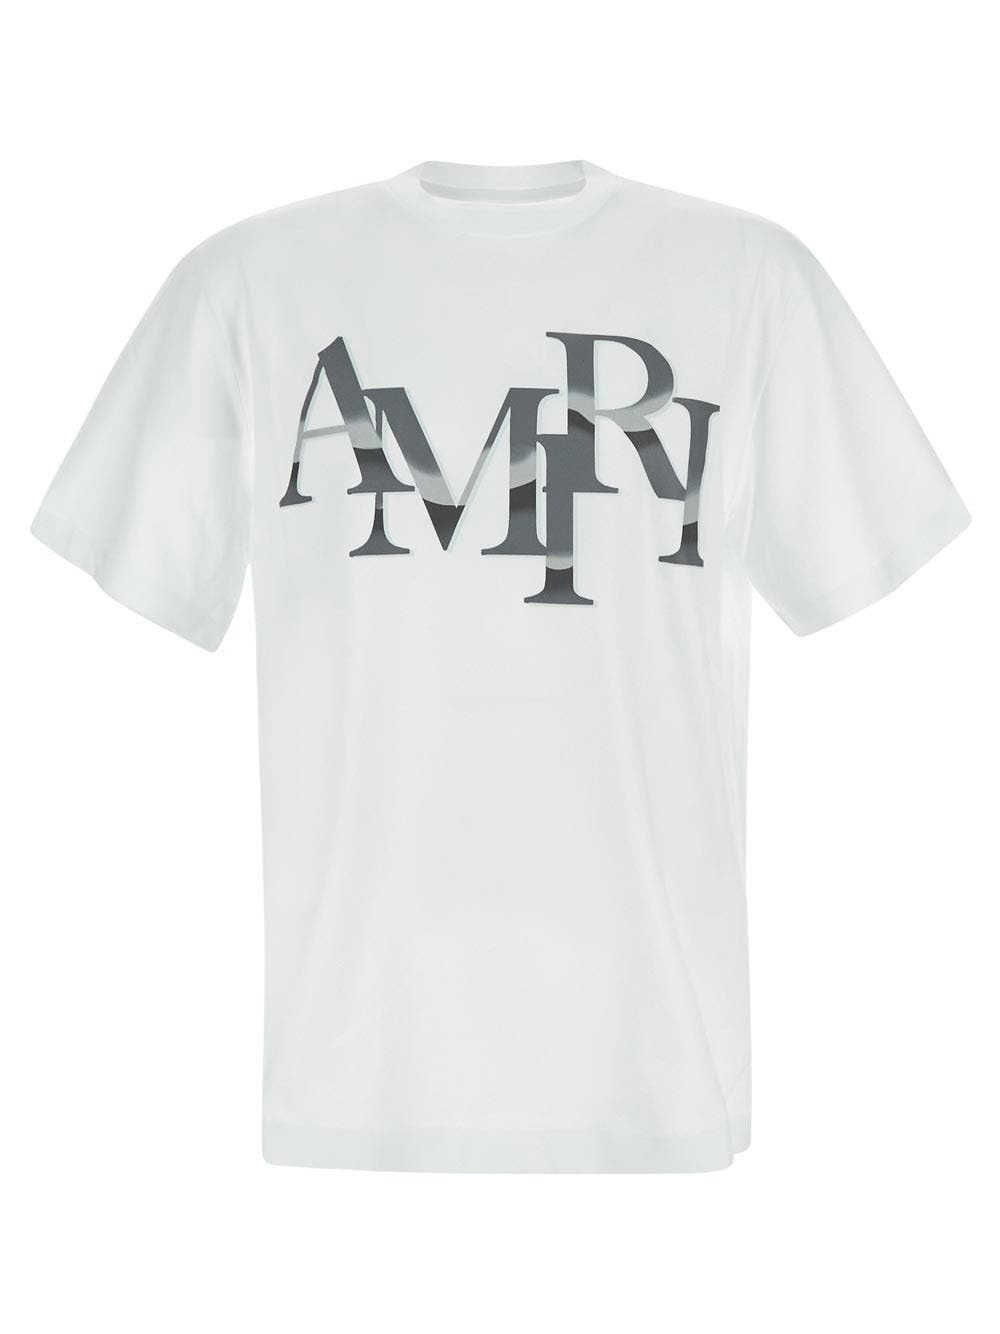 Photo: Amiri Logo T Shirt